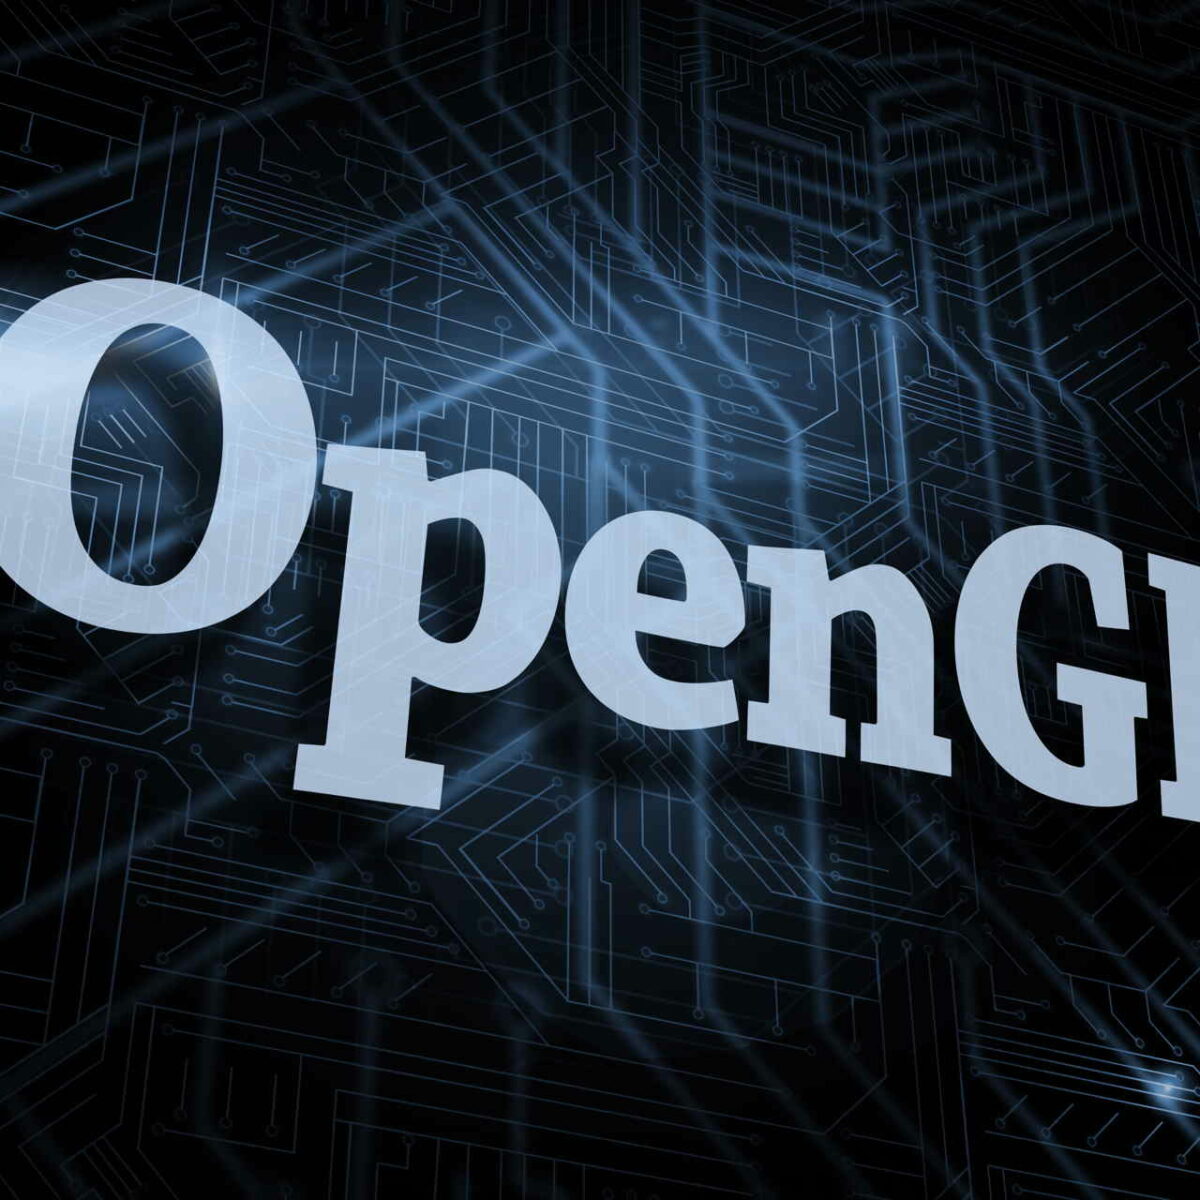 error opengl 2.0 renderer not supported